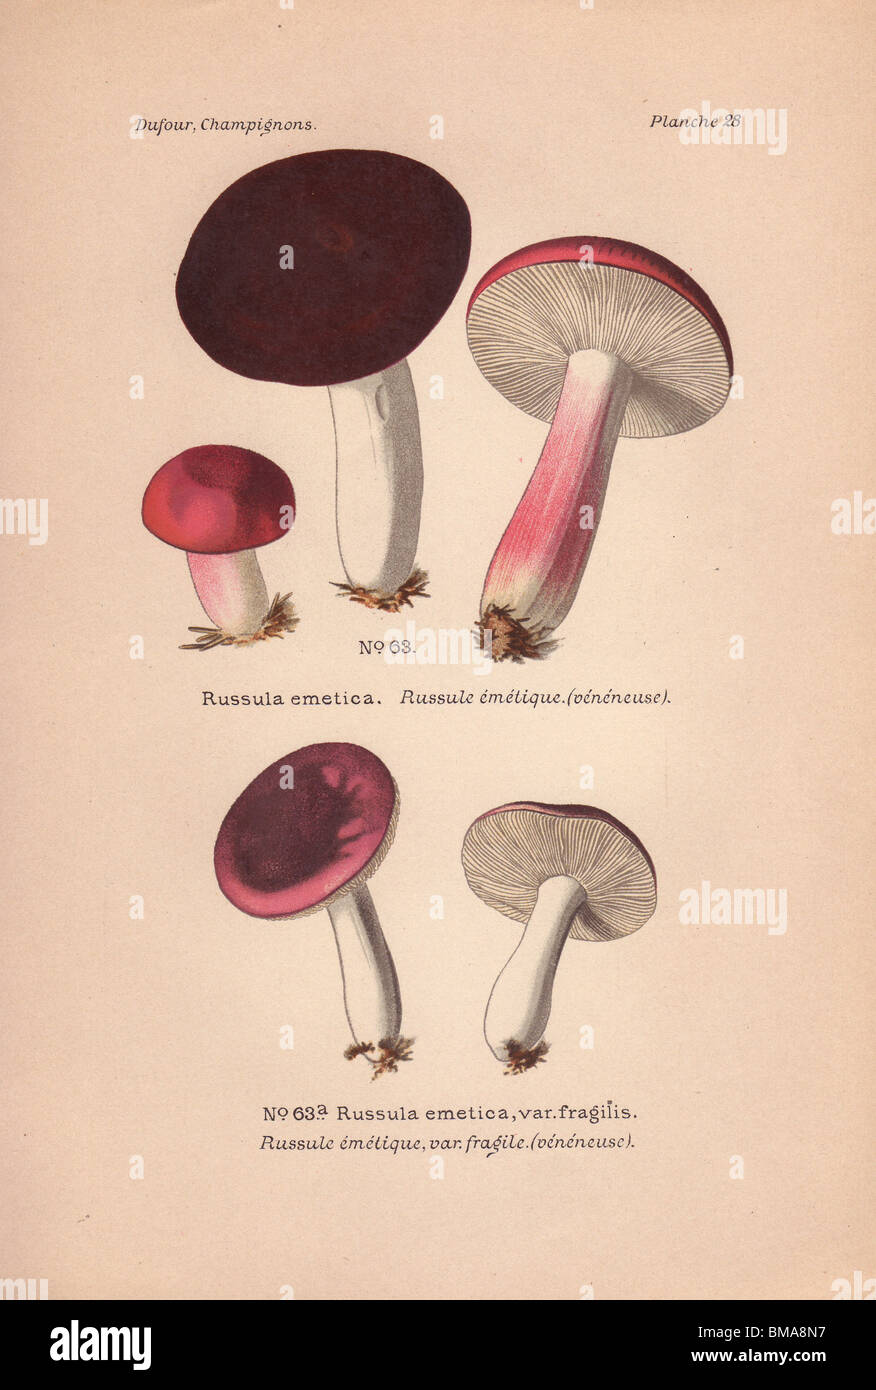 Poisonous 'sickener' mushrooms: Russula emetica and R. emetica var. fragilis. Stock Photo